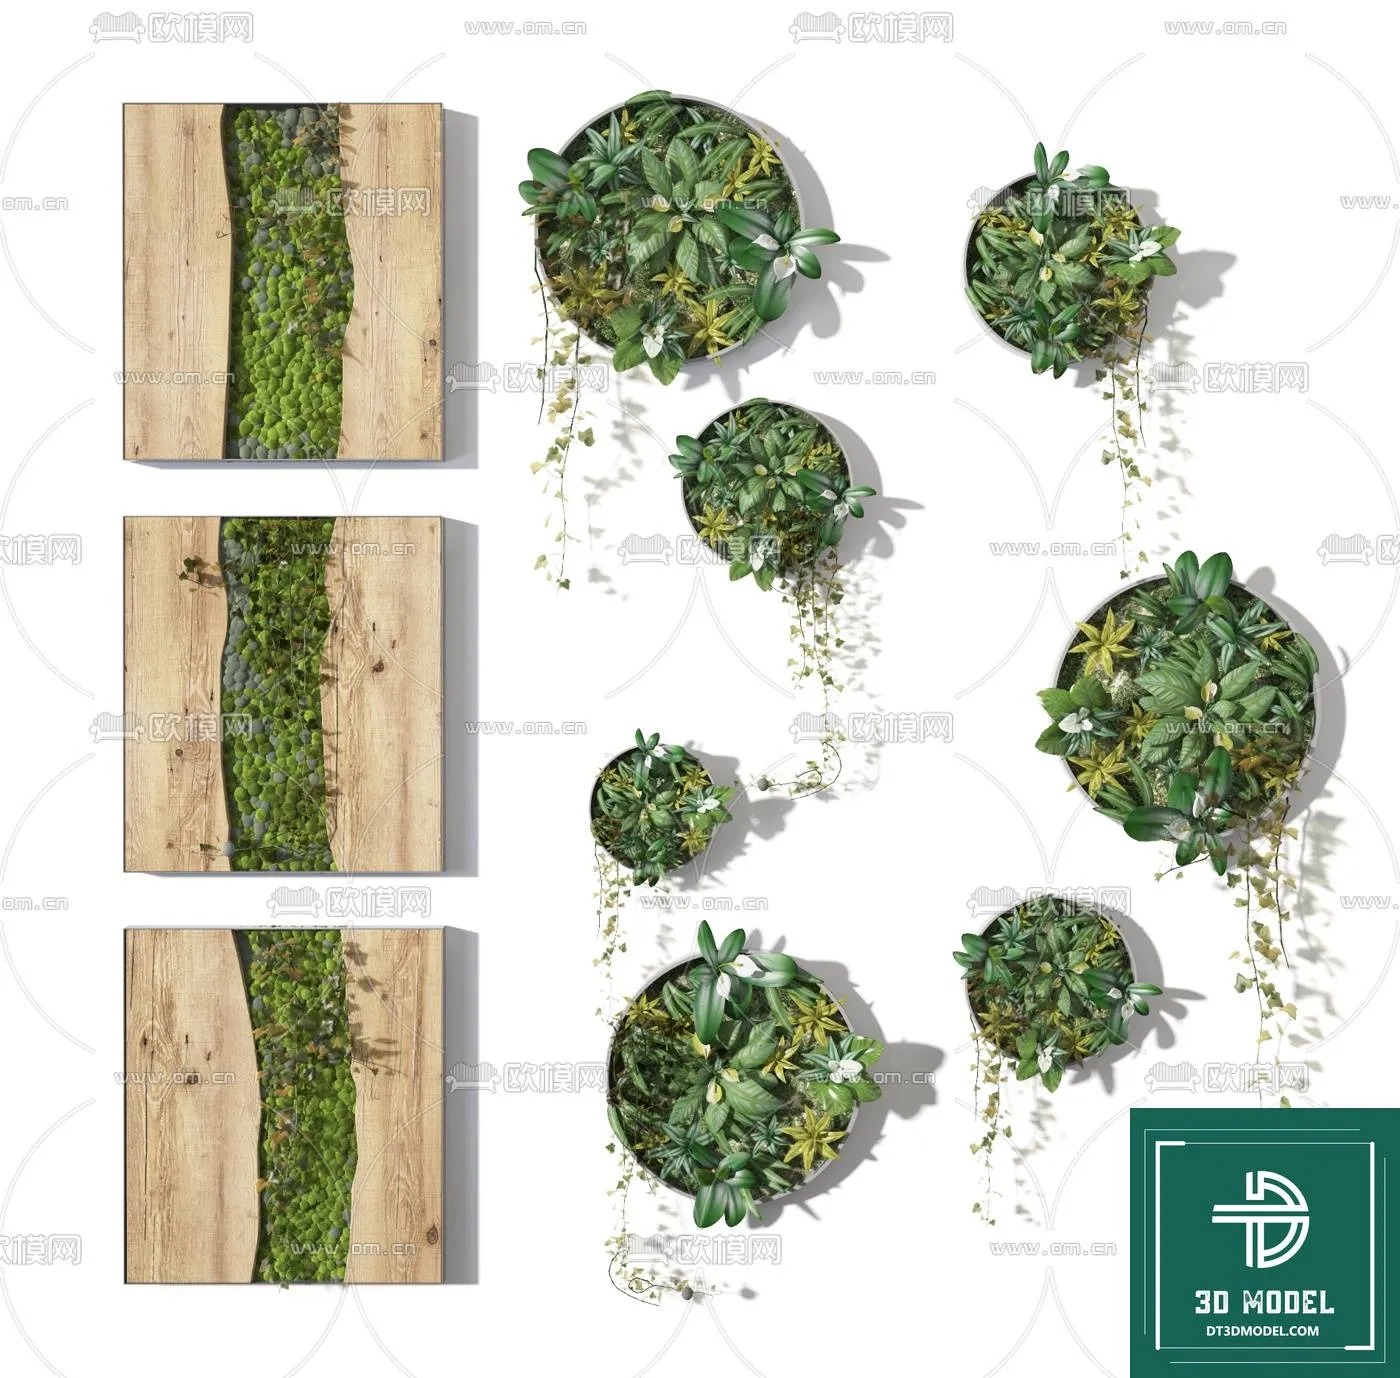 VERTICAL GARDEN – FITOWALL PLANT 3D MODEL – 051